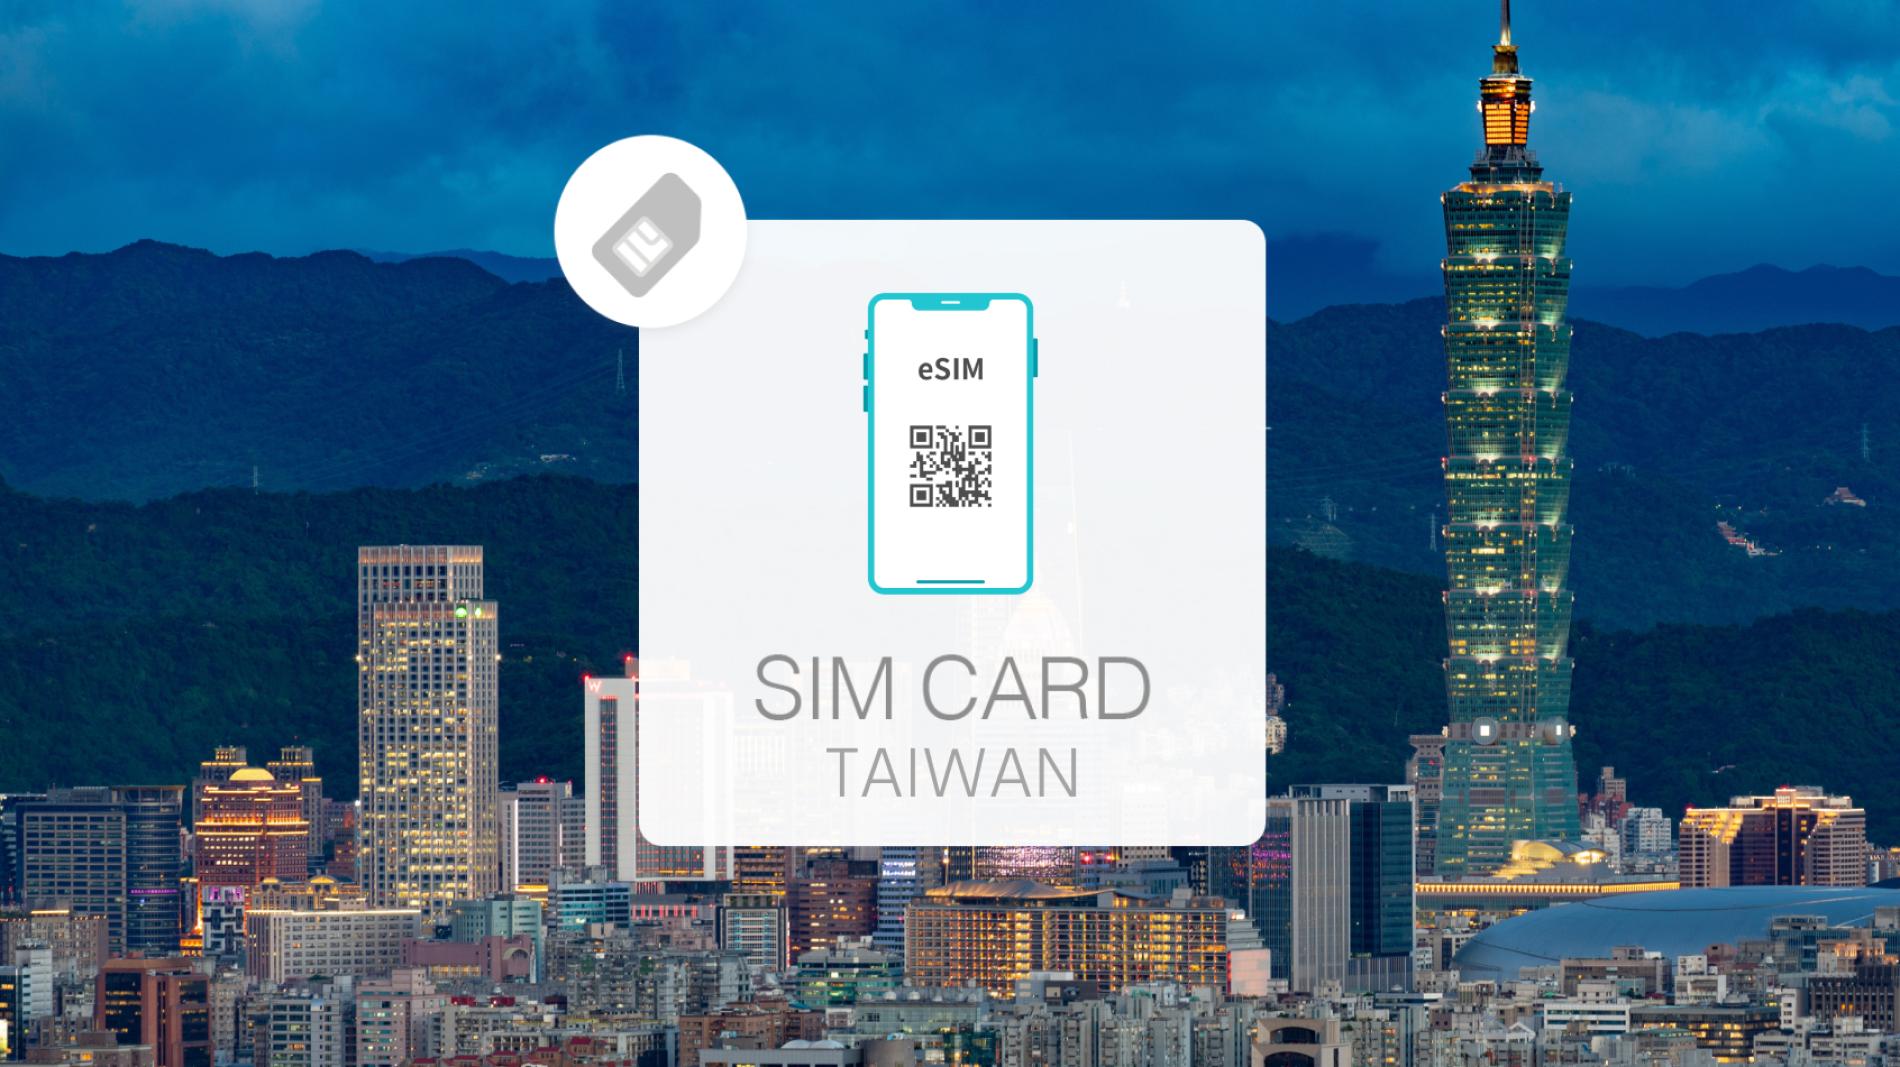 台湾 eSIM 1日2GB データ通信のみ可能 中華電信 SIM SIMカード プリペイドSIM 3日 台北 高雄 台中 台南 データ 通信 メールで受取 一時帰国 留学 短期 出張